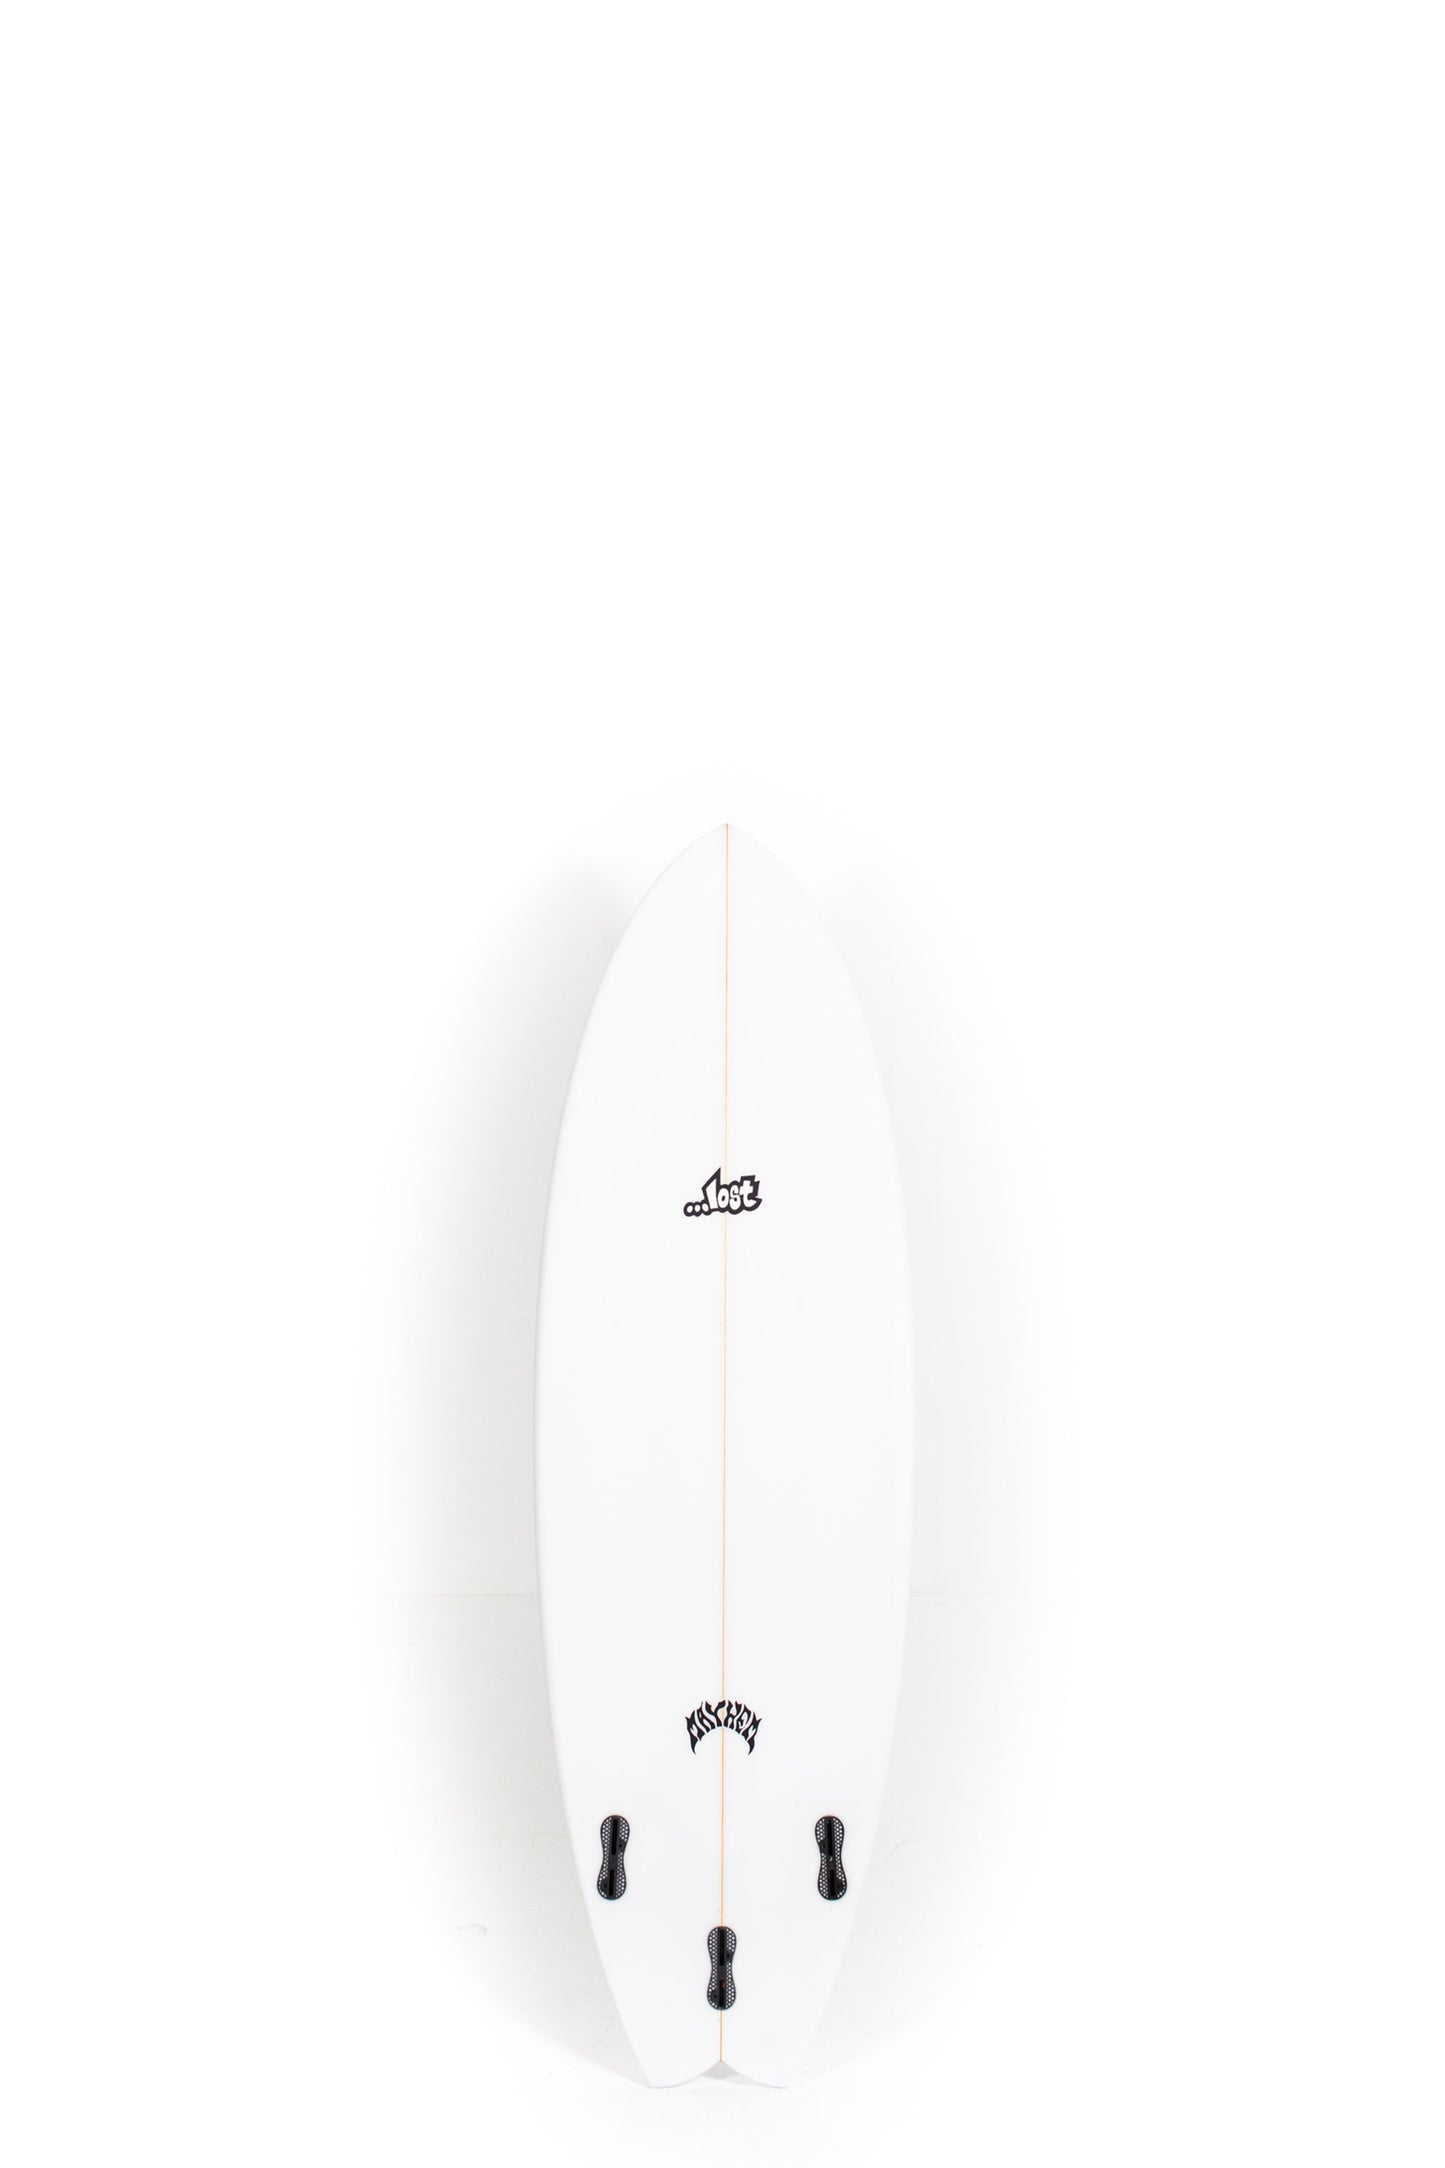 Pukas Surf Shop - Lost Surfboard - RNF '96 by Matt Biolos - 5'6"x 19.75" x 2.40 x 29,5L - MH18068